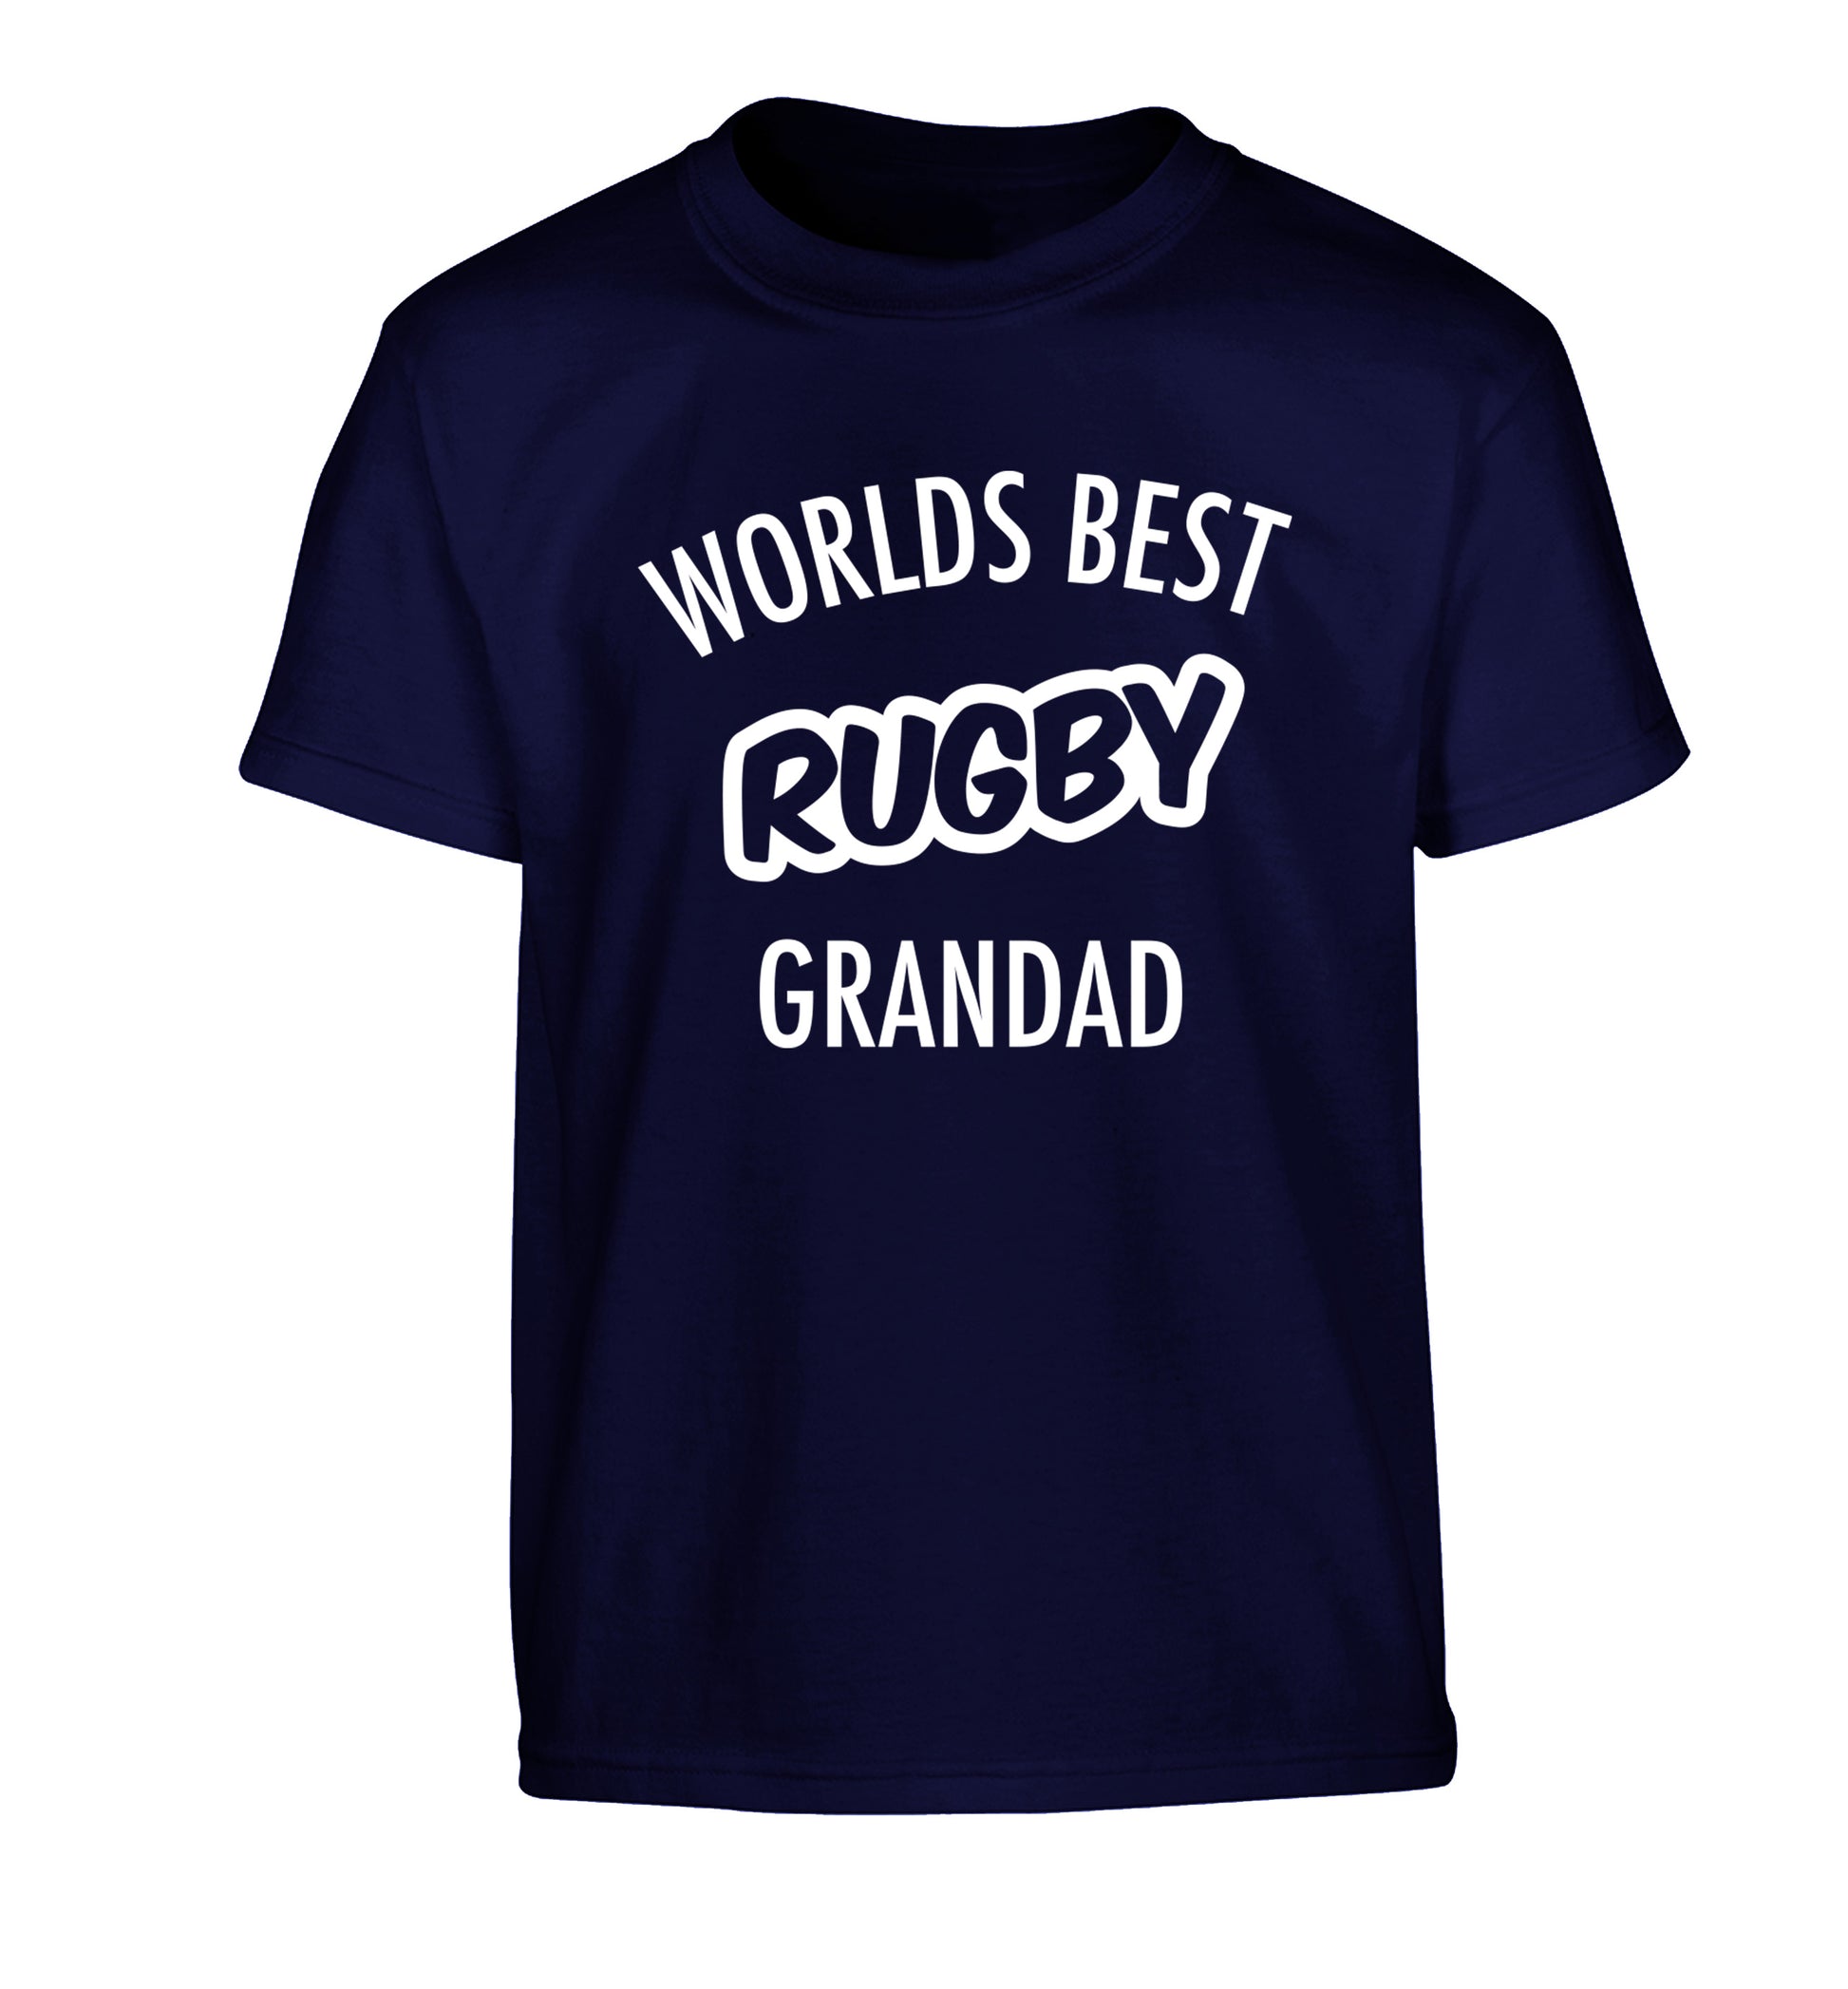 Worlds best rugby grandad Children's navy Tshirt 12-13 Years